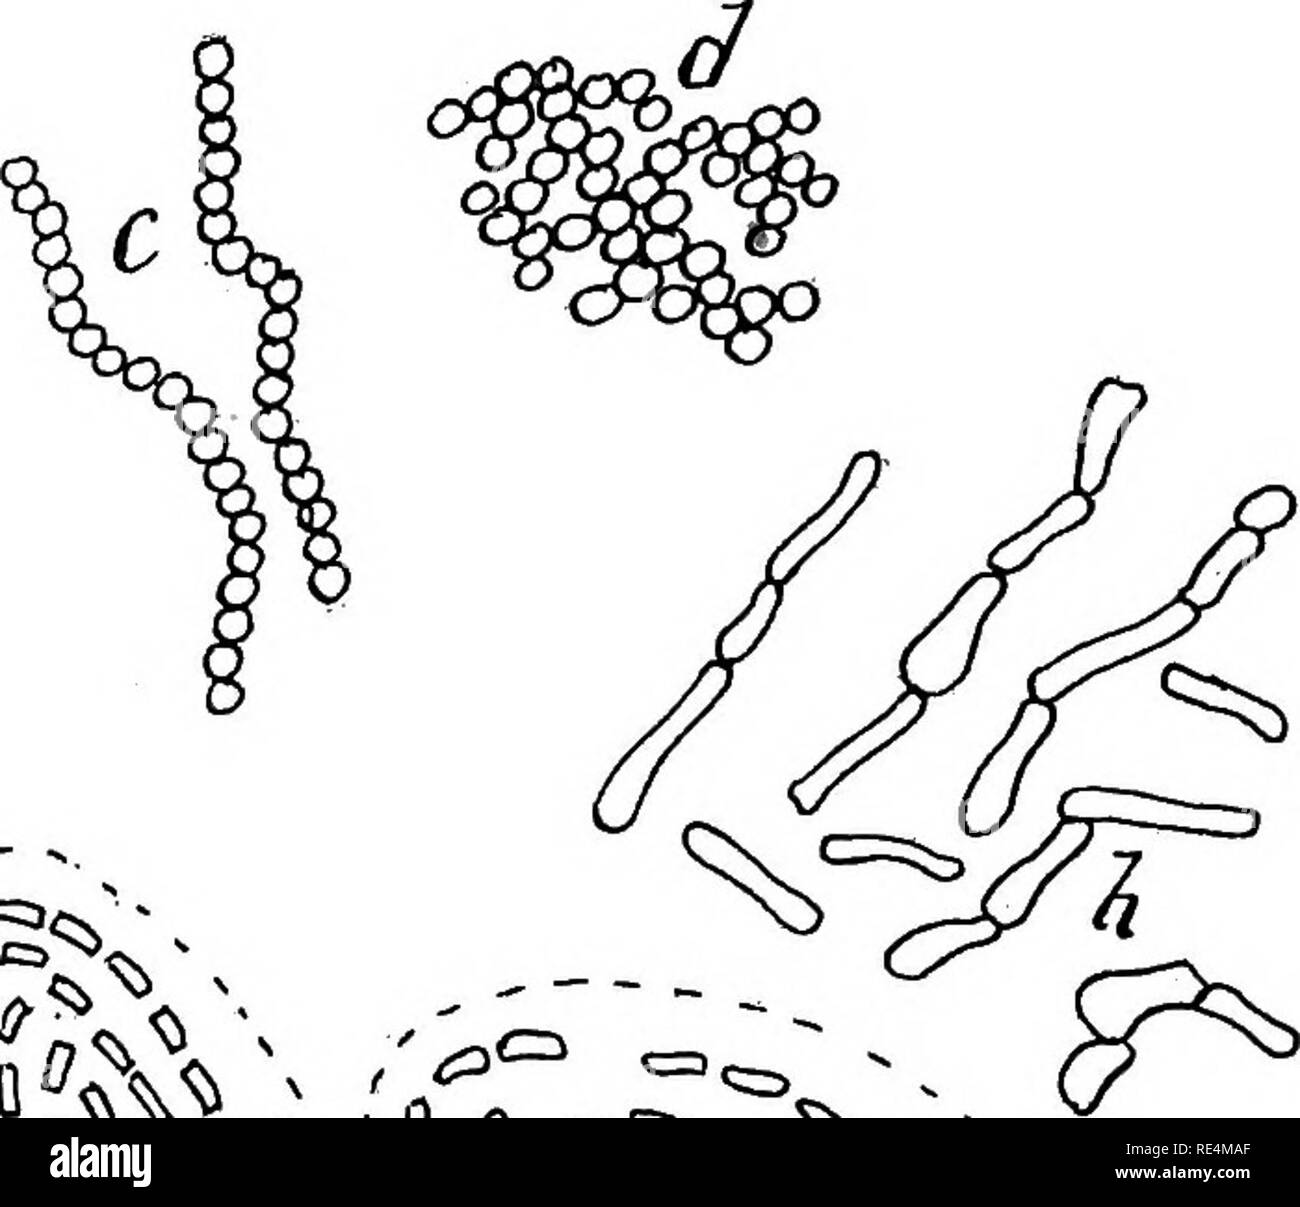 . Bactériologie pharmaceutique. Bactériologie, désinfection et de désinfectants. / Cochon. 10.-illustrant la formation de zooglea, o, agrégats bacillar résultant de la cohésion ; 6, d'agrégats résultant de cohésion sociale de bacilles avec cellule gélatinisé-murs ; C, Streptococcus formation résultant du cloisonnement d'une forme coccus ; je, cohésion cocci formes ; e, bout à bout des bacilles (résultant de la septation), enfermés dans un manteau gélatineux ;/, bacillar thread jointe à la gélatine ; g, mycobactériennes formulaire ; ft, formes de cellules irrégulières, comme Mycoderma aceti. montrent une augmentation du taux de la septation, une période stationnaire, Banque D'Images